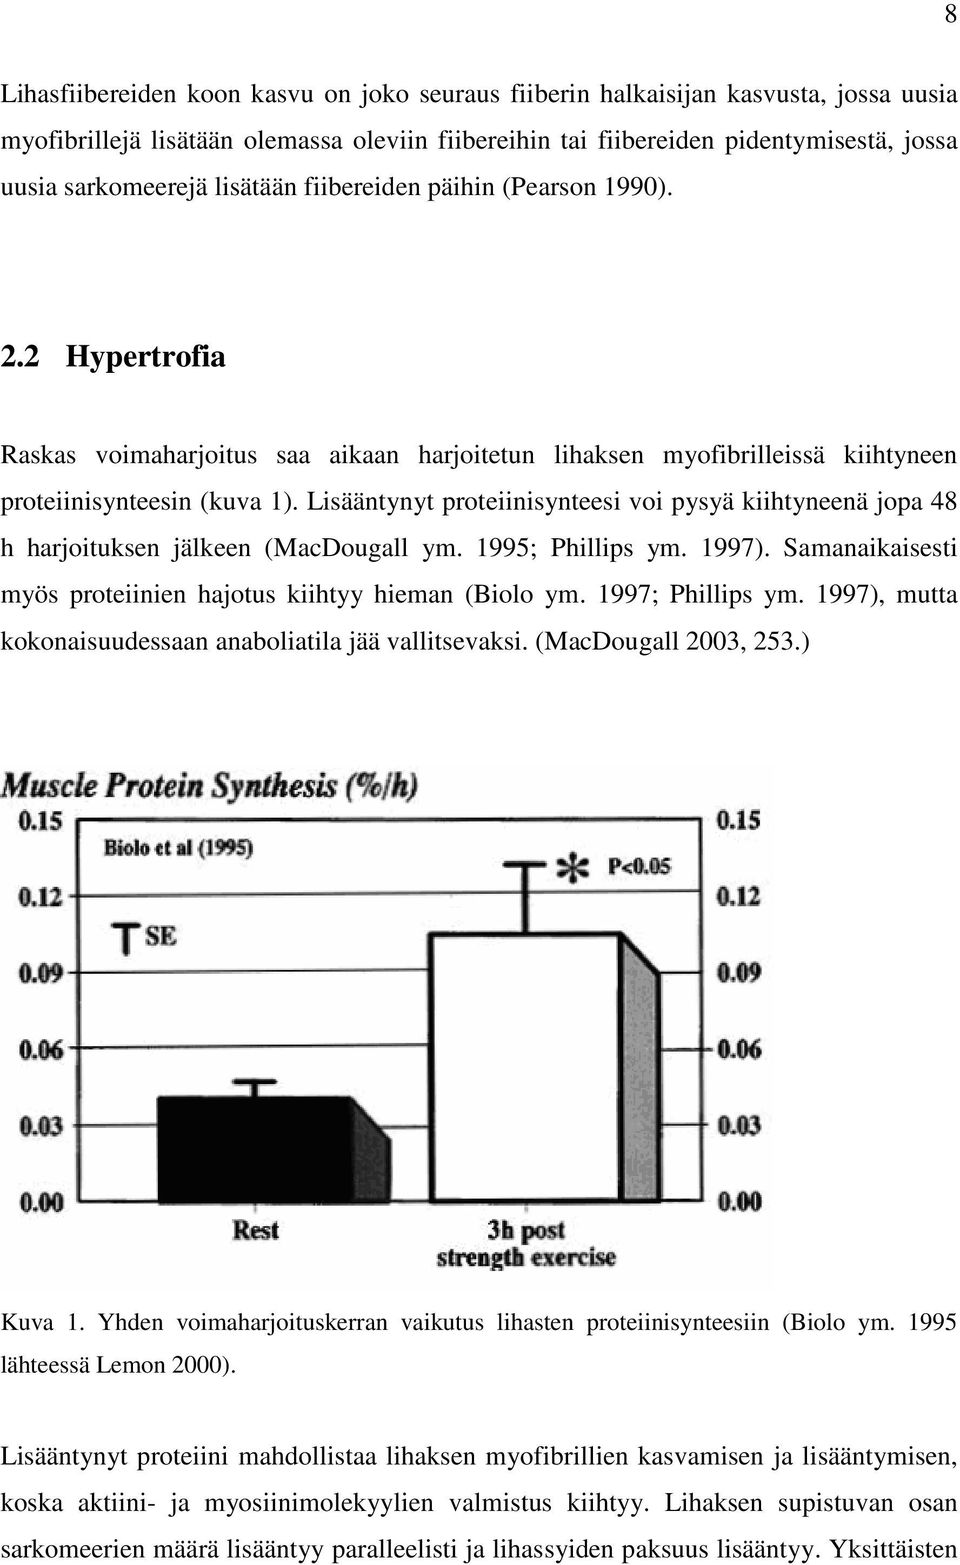 Lisääntynyt proteiinisynteesi voi pysyä kiihtyneenä jopa 48 h harjoituksen jälkeen (MacDougall ym. 1995; Phillips ym. 1997). Samanaikaisesti myös proteiinien hajotus kiihtyy hieman (Biolo ym.